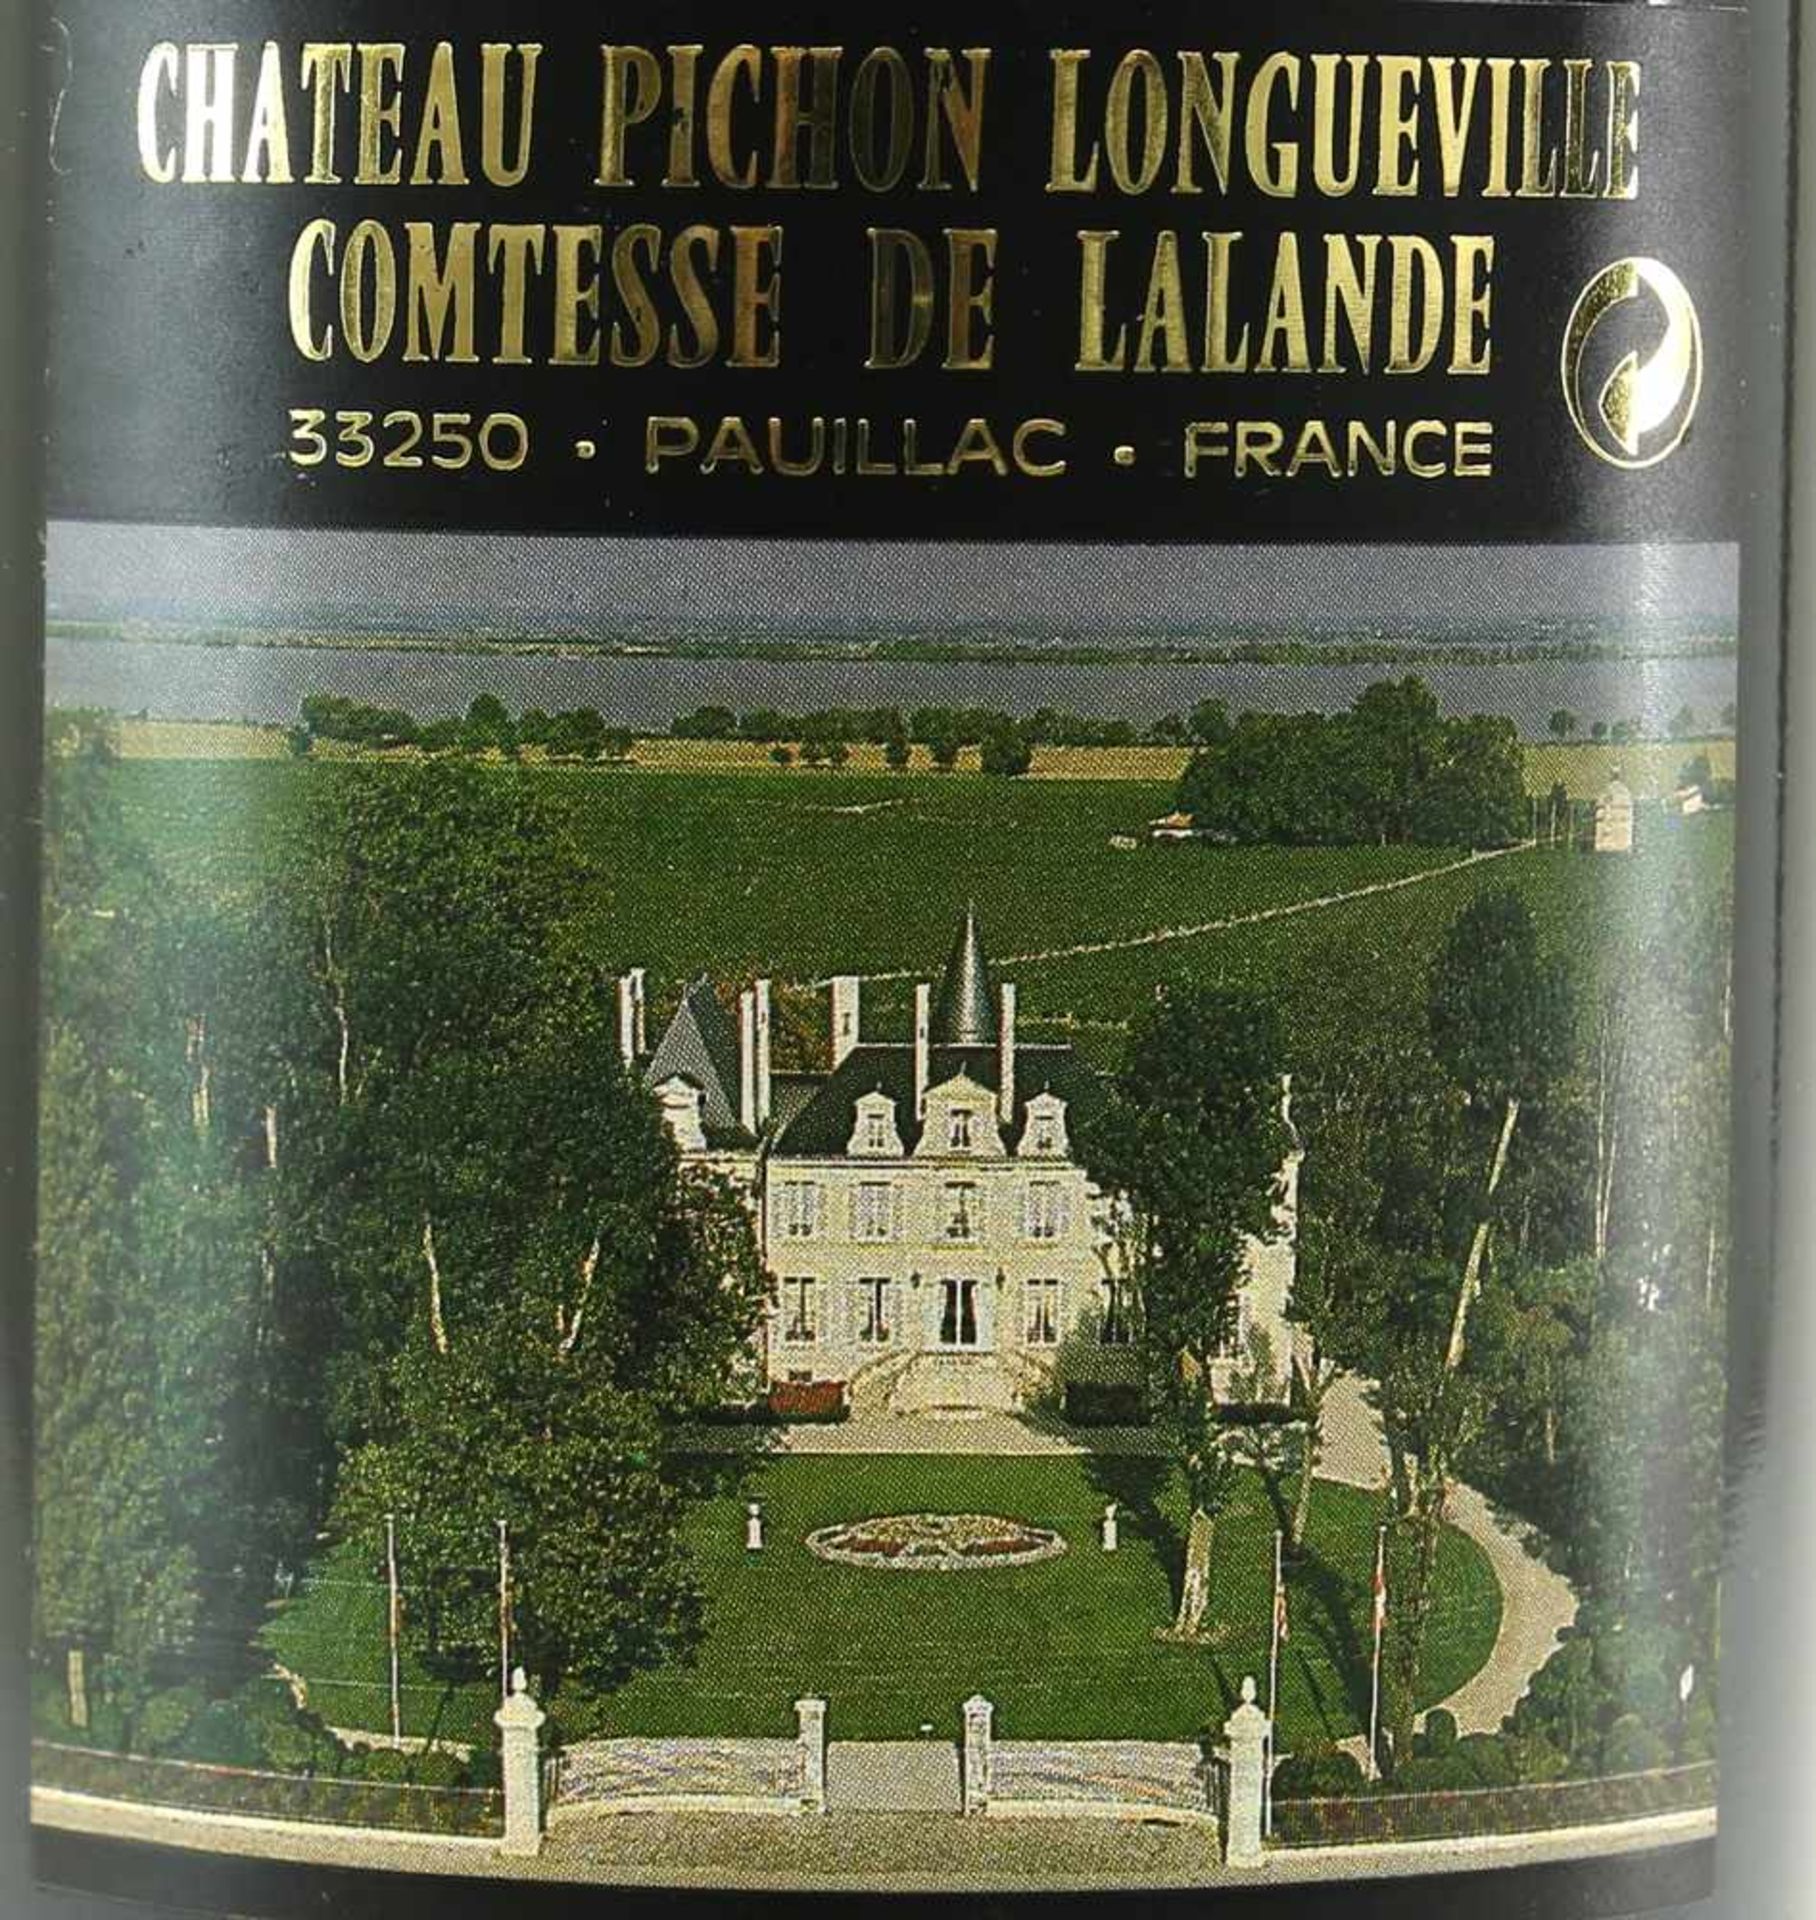 Chateau Pichon Longueville 1992Comtesse de Lalande 1986. Grand Cru Classé. 0,75 Liter Flasche. - Bild 3 aus 4